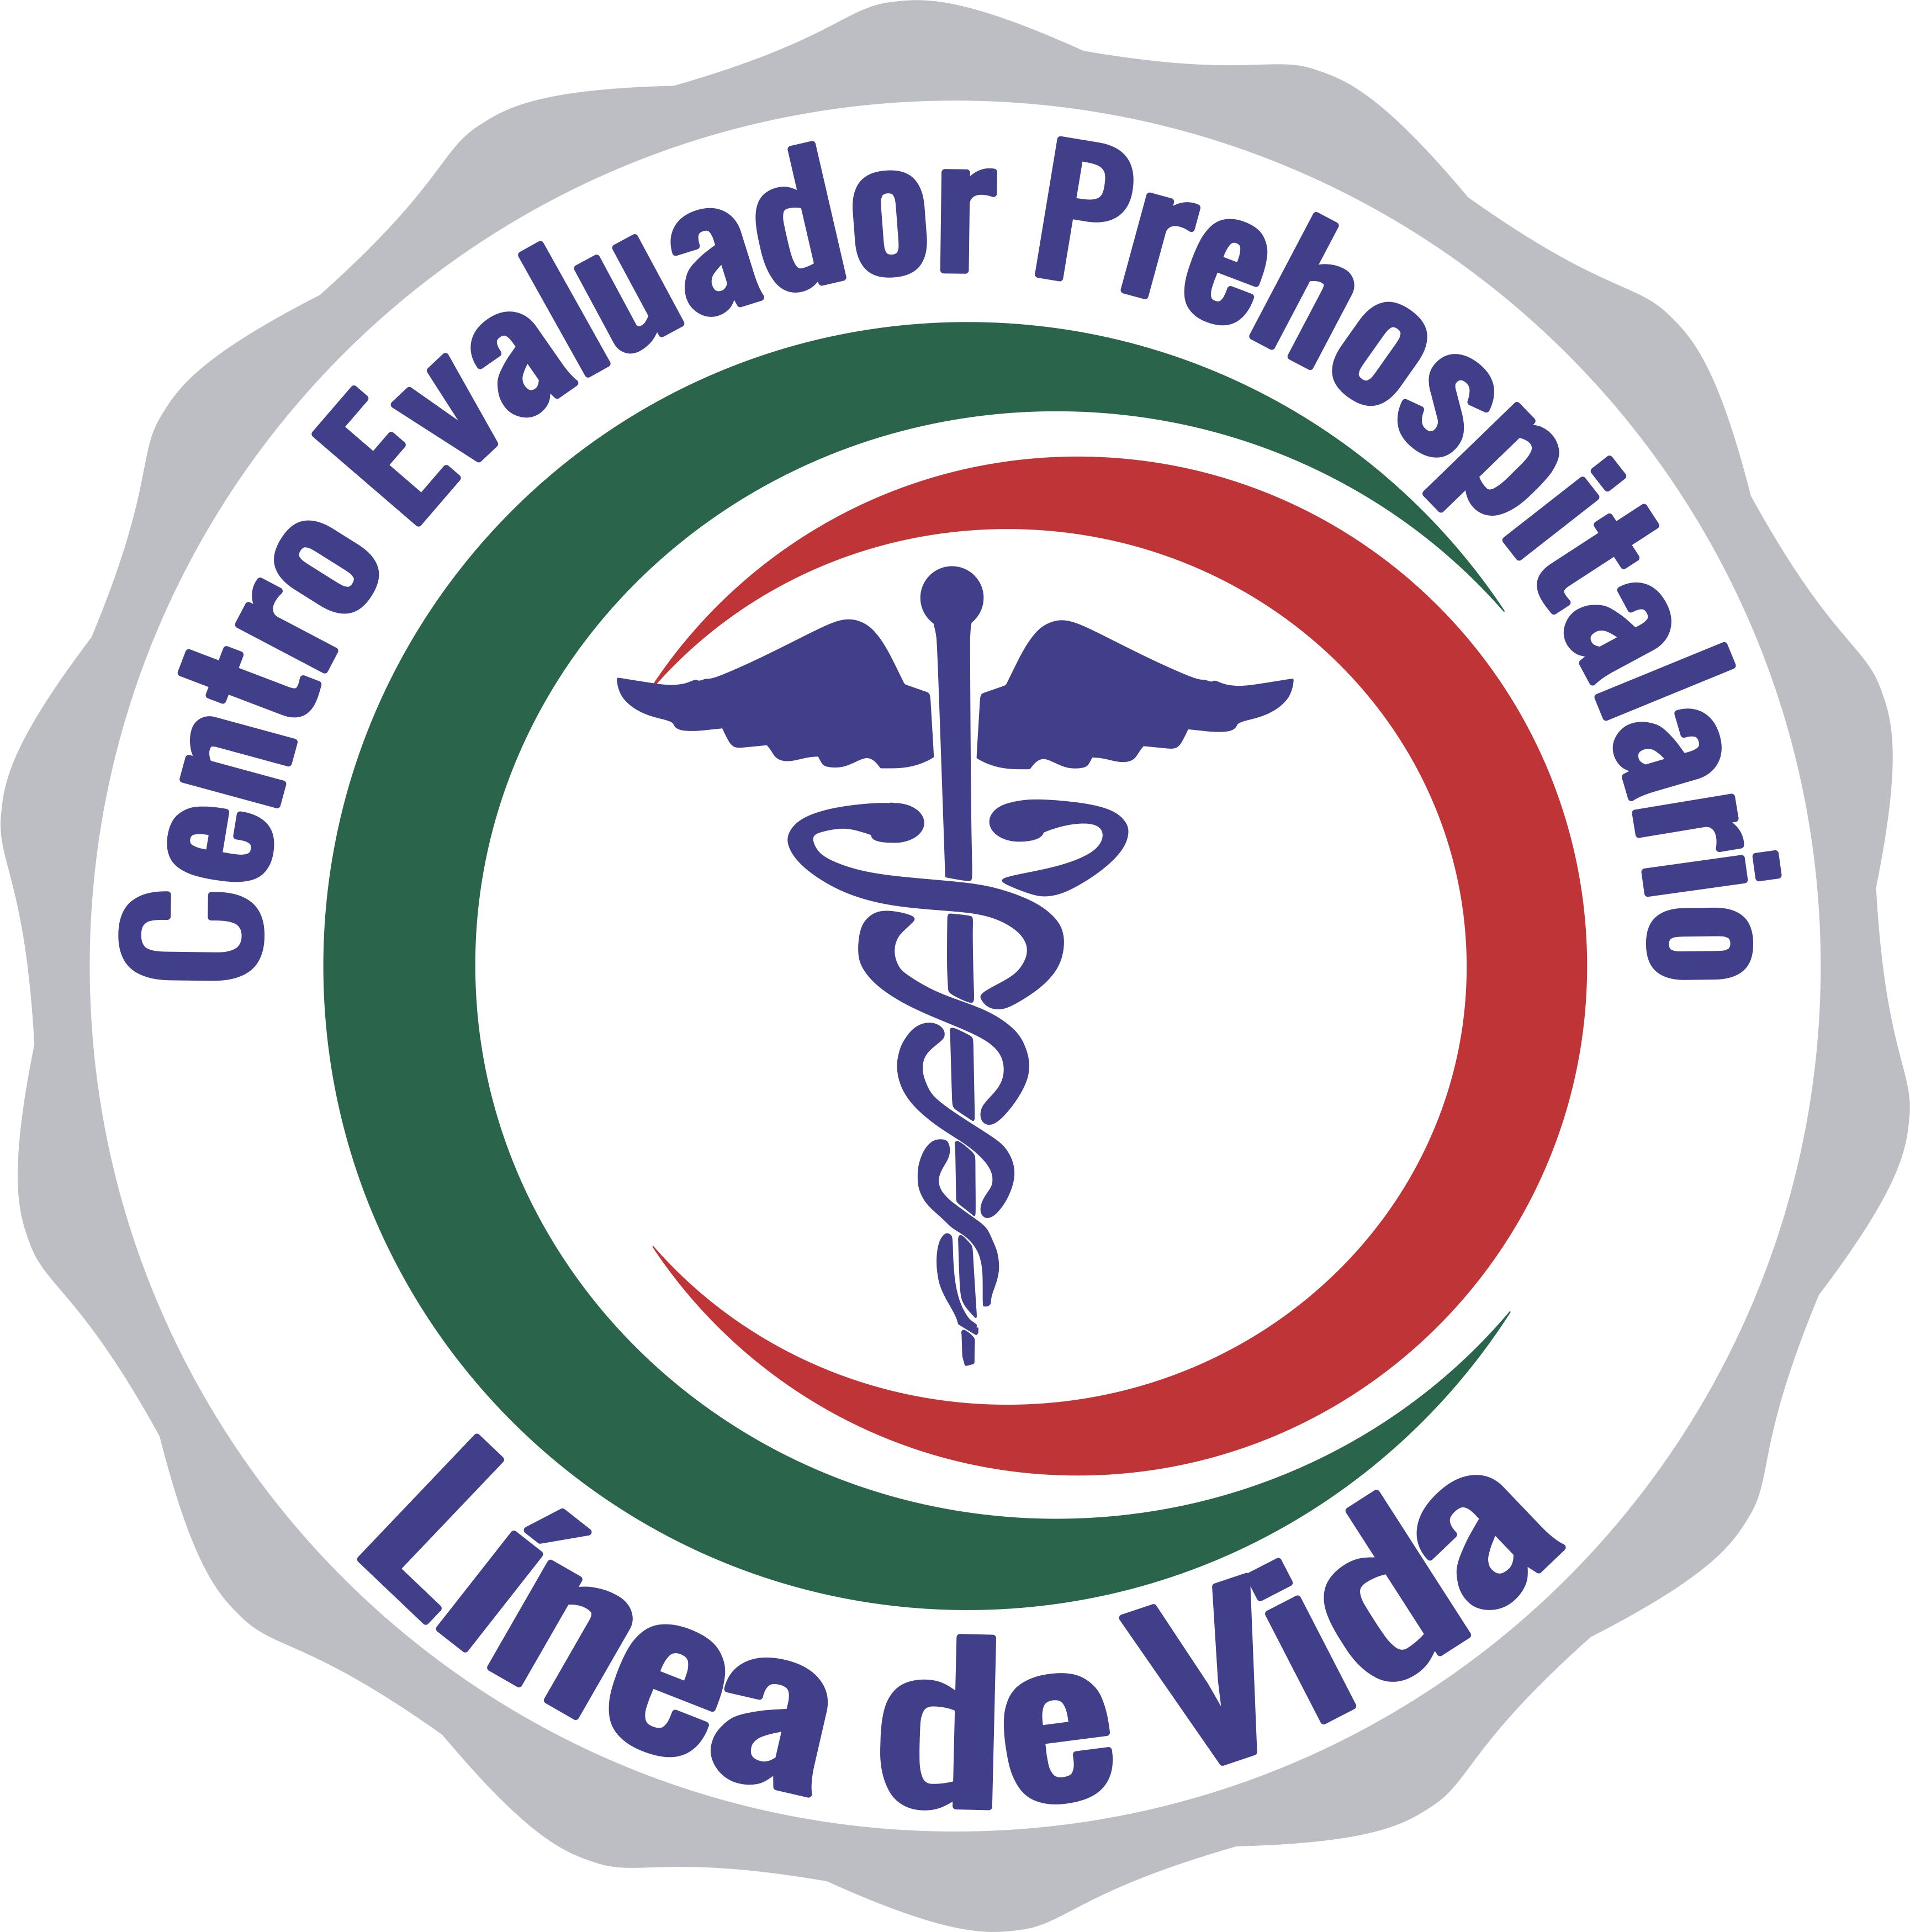 Centro Evaluador Prehospitalario Línea de Vida